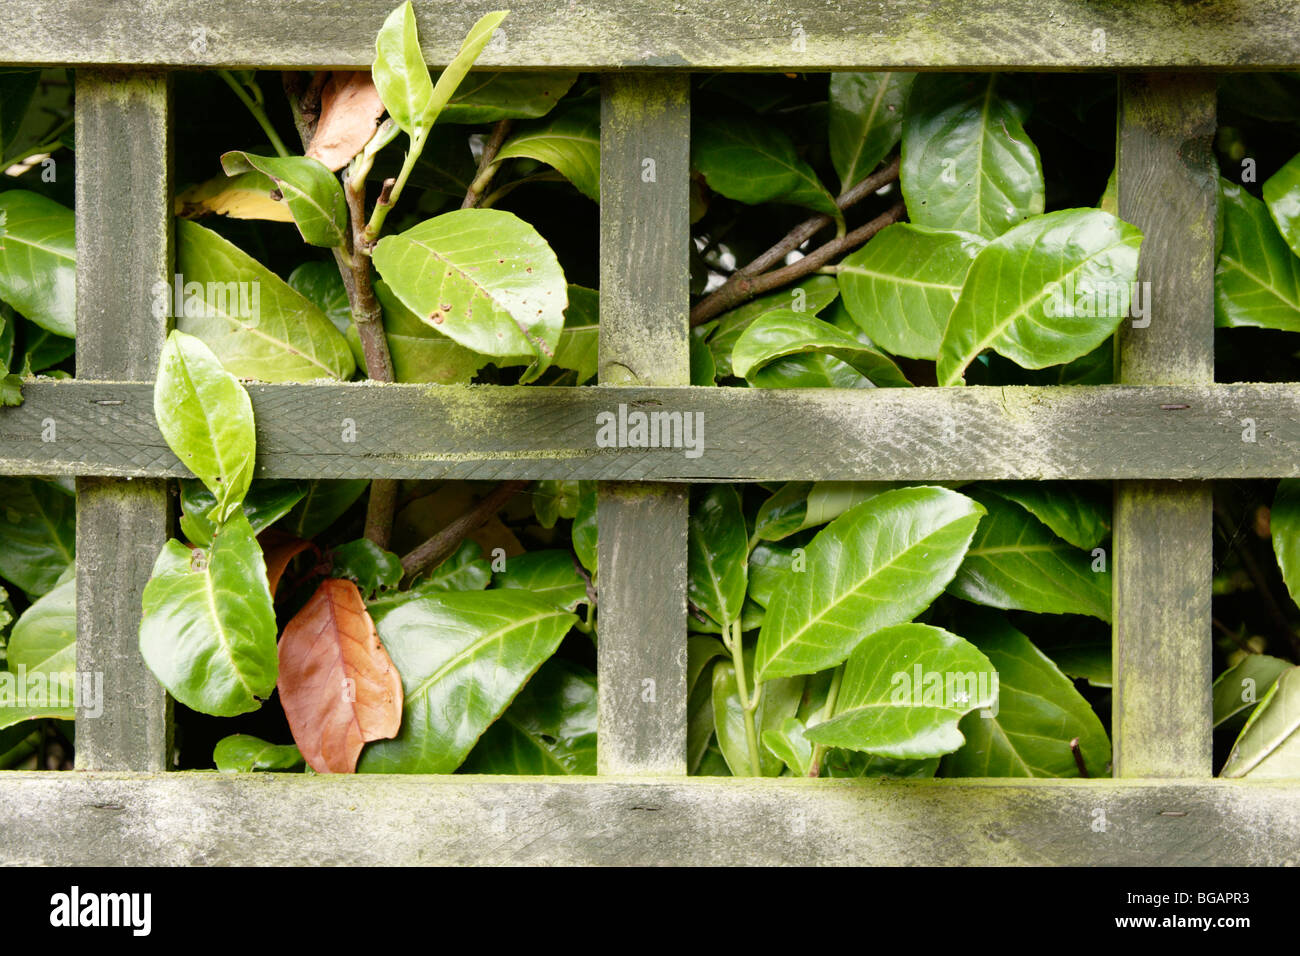 Laurel (Laurus nobilis) hedgerow behind wooden garden fence Stock Photo